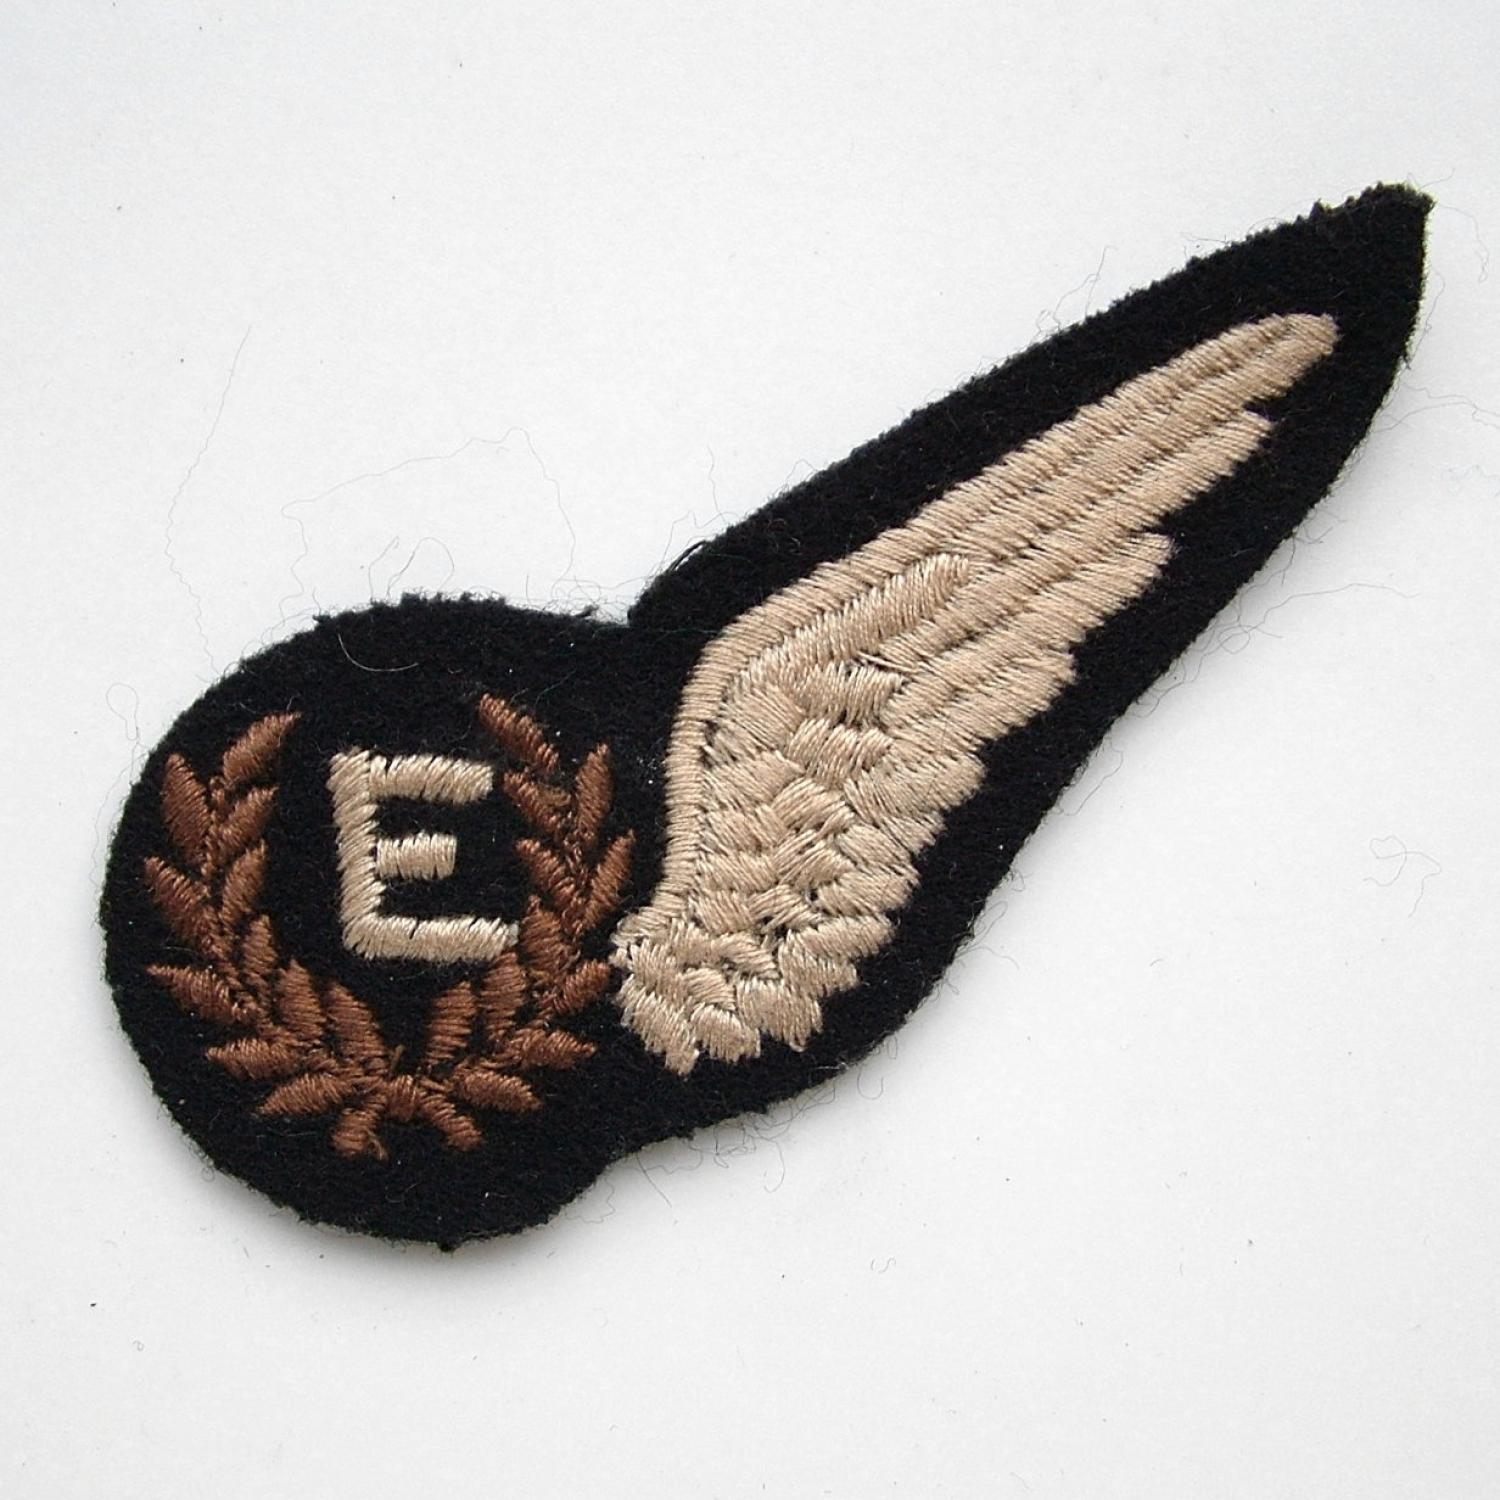 RAF Flight engineer brevet